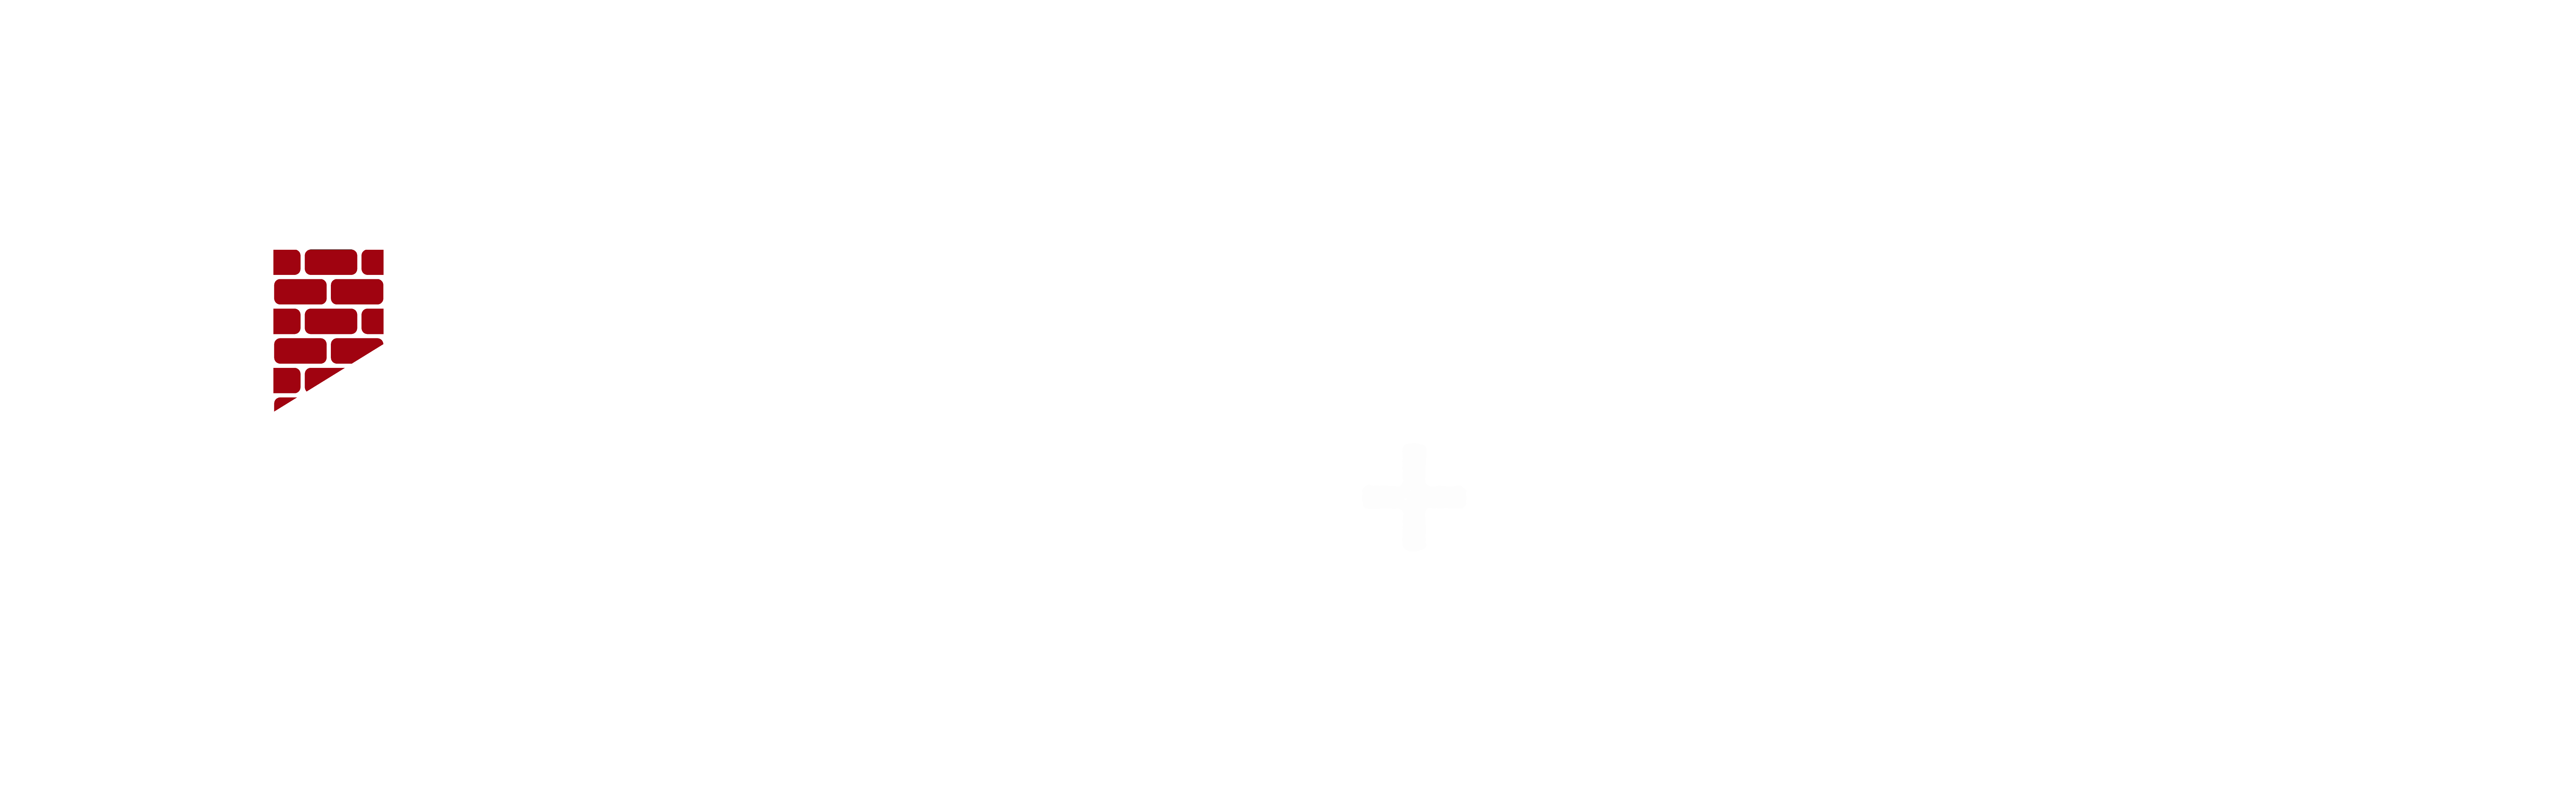 TJs-chimney-logo_GMG2